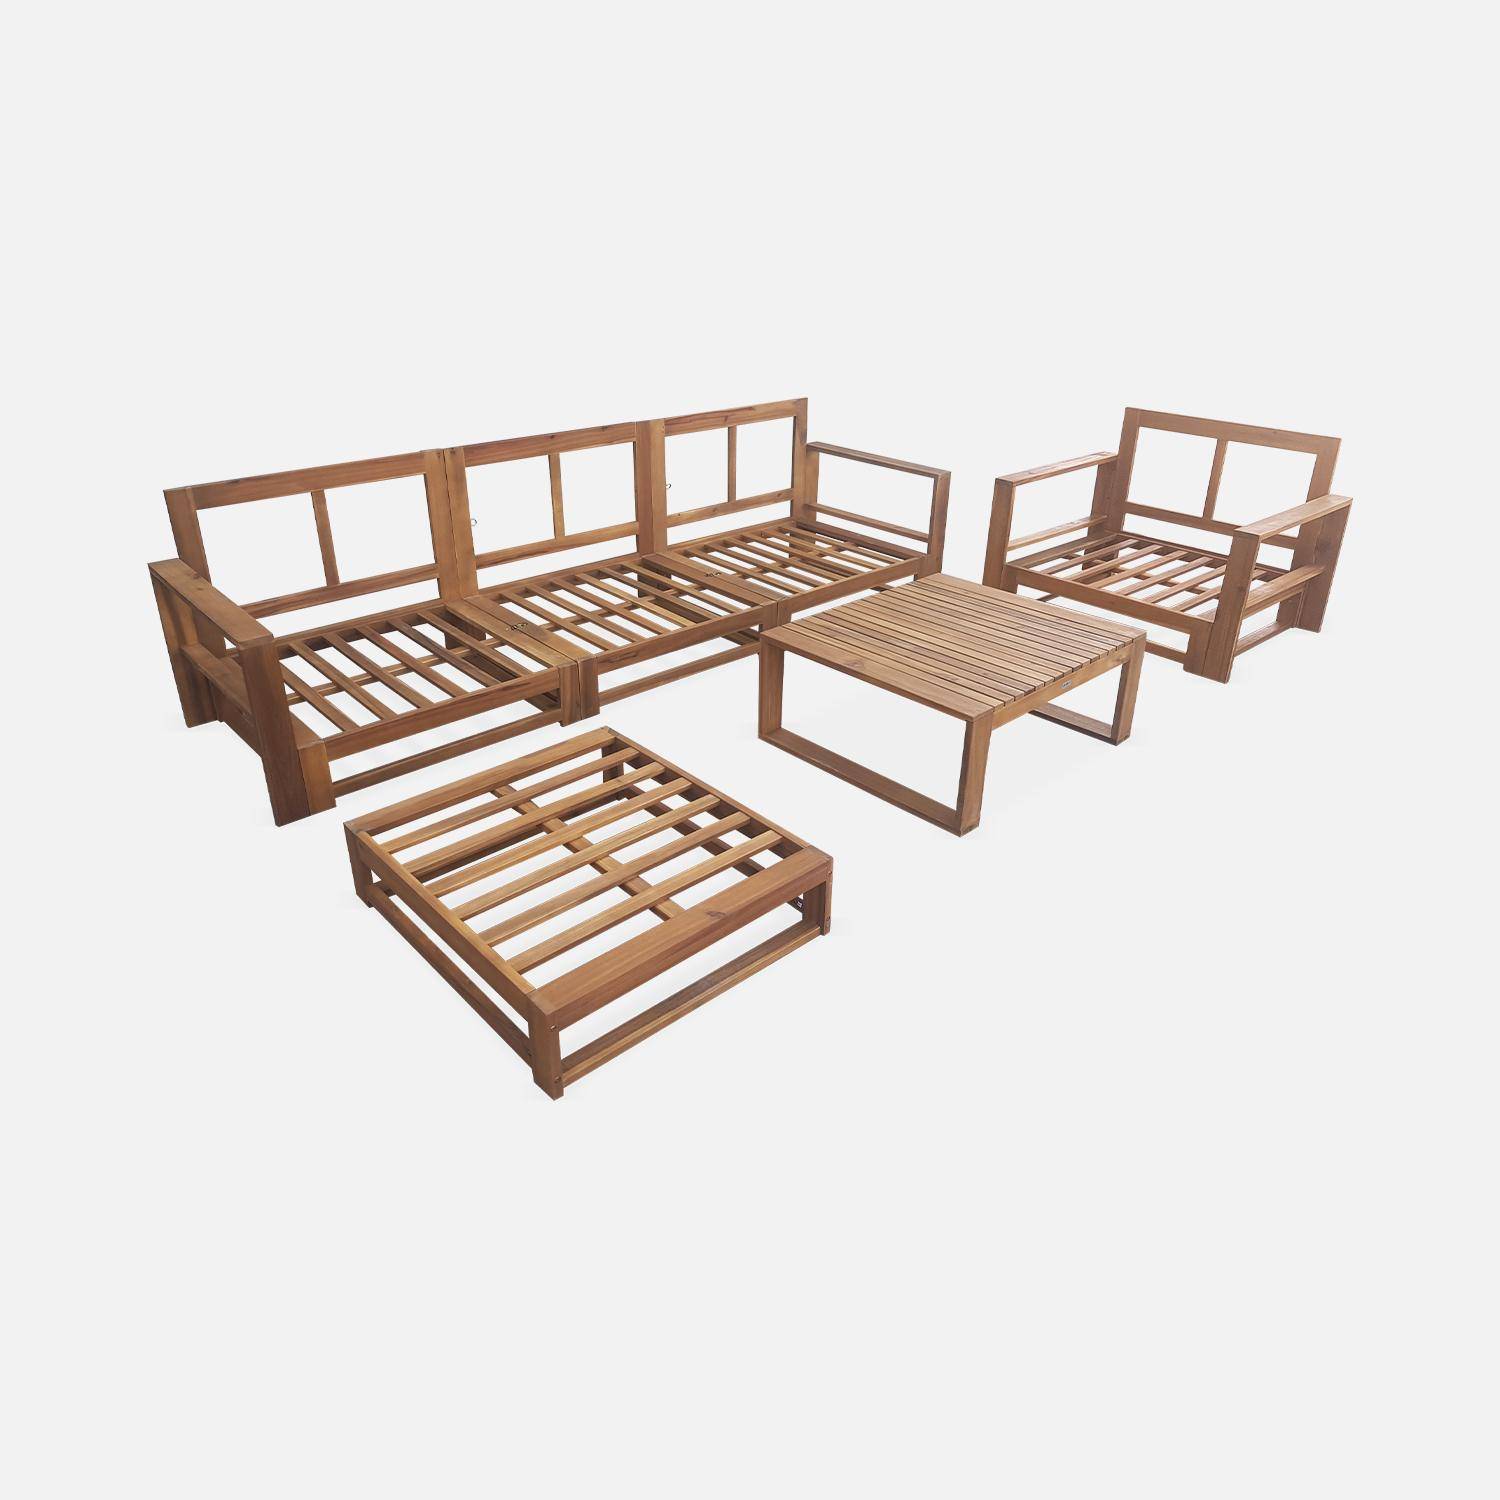 Gartenmöbel aus Holz mit 5 Sitzplätzen - Mendoza - graue Kissen, Sofa, Sessel und Couchtisch aus Akazie, 6 modulare Elemente, Design Photo6